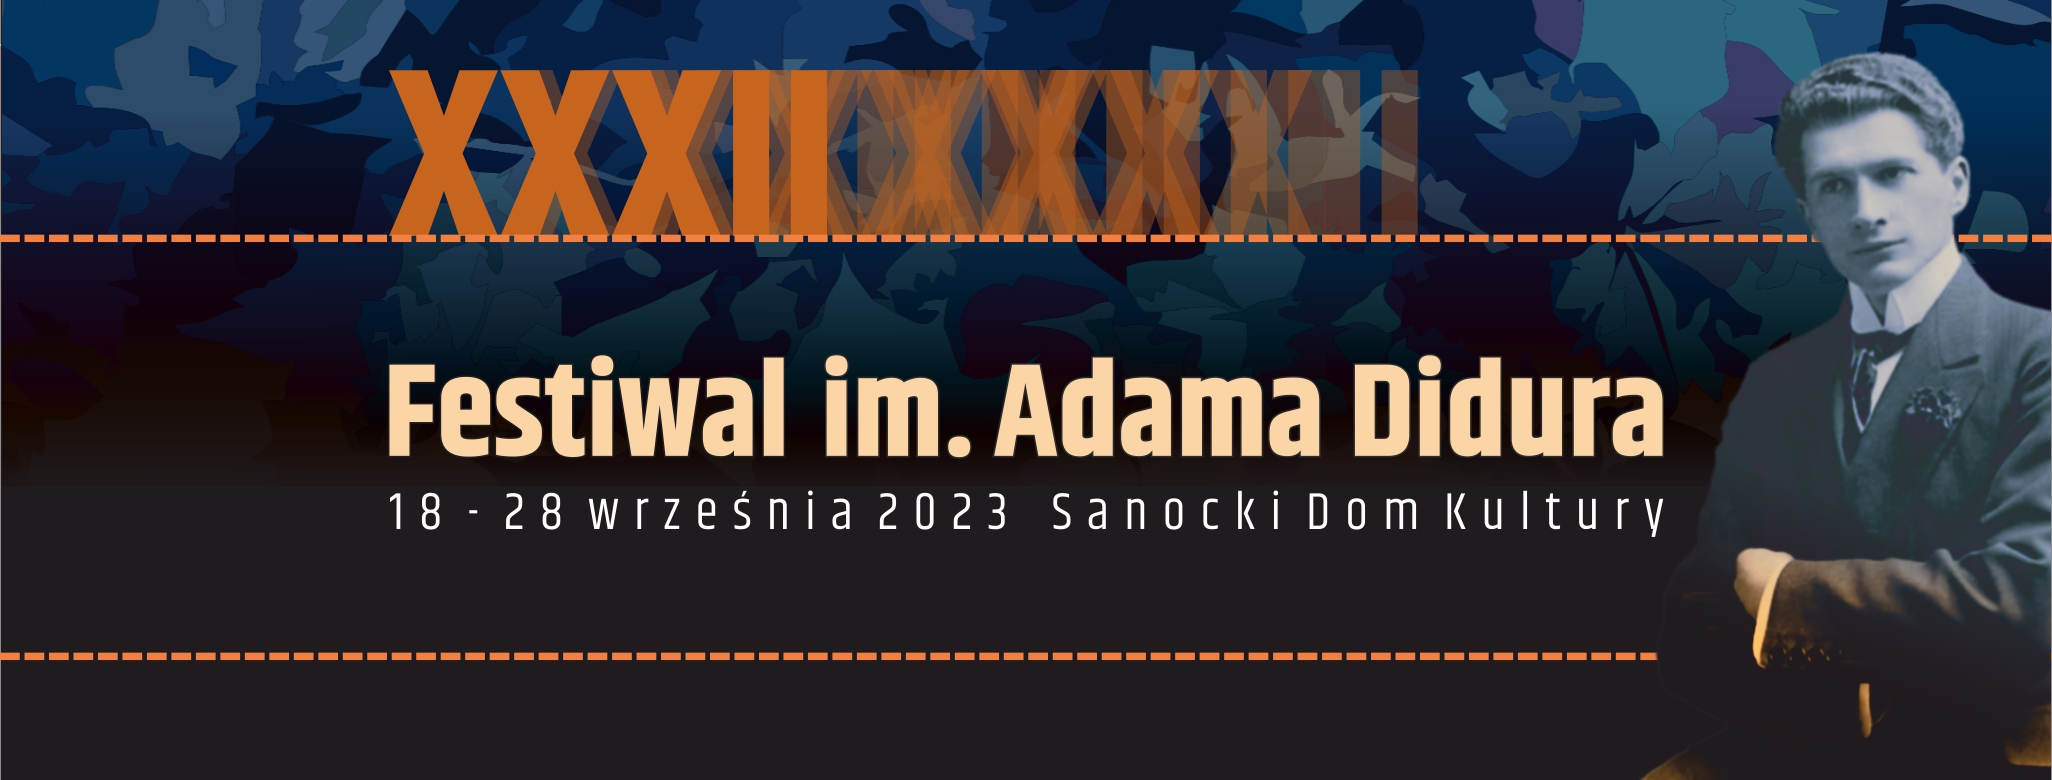 Festiwal im. Adama Didura